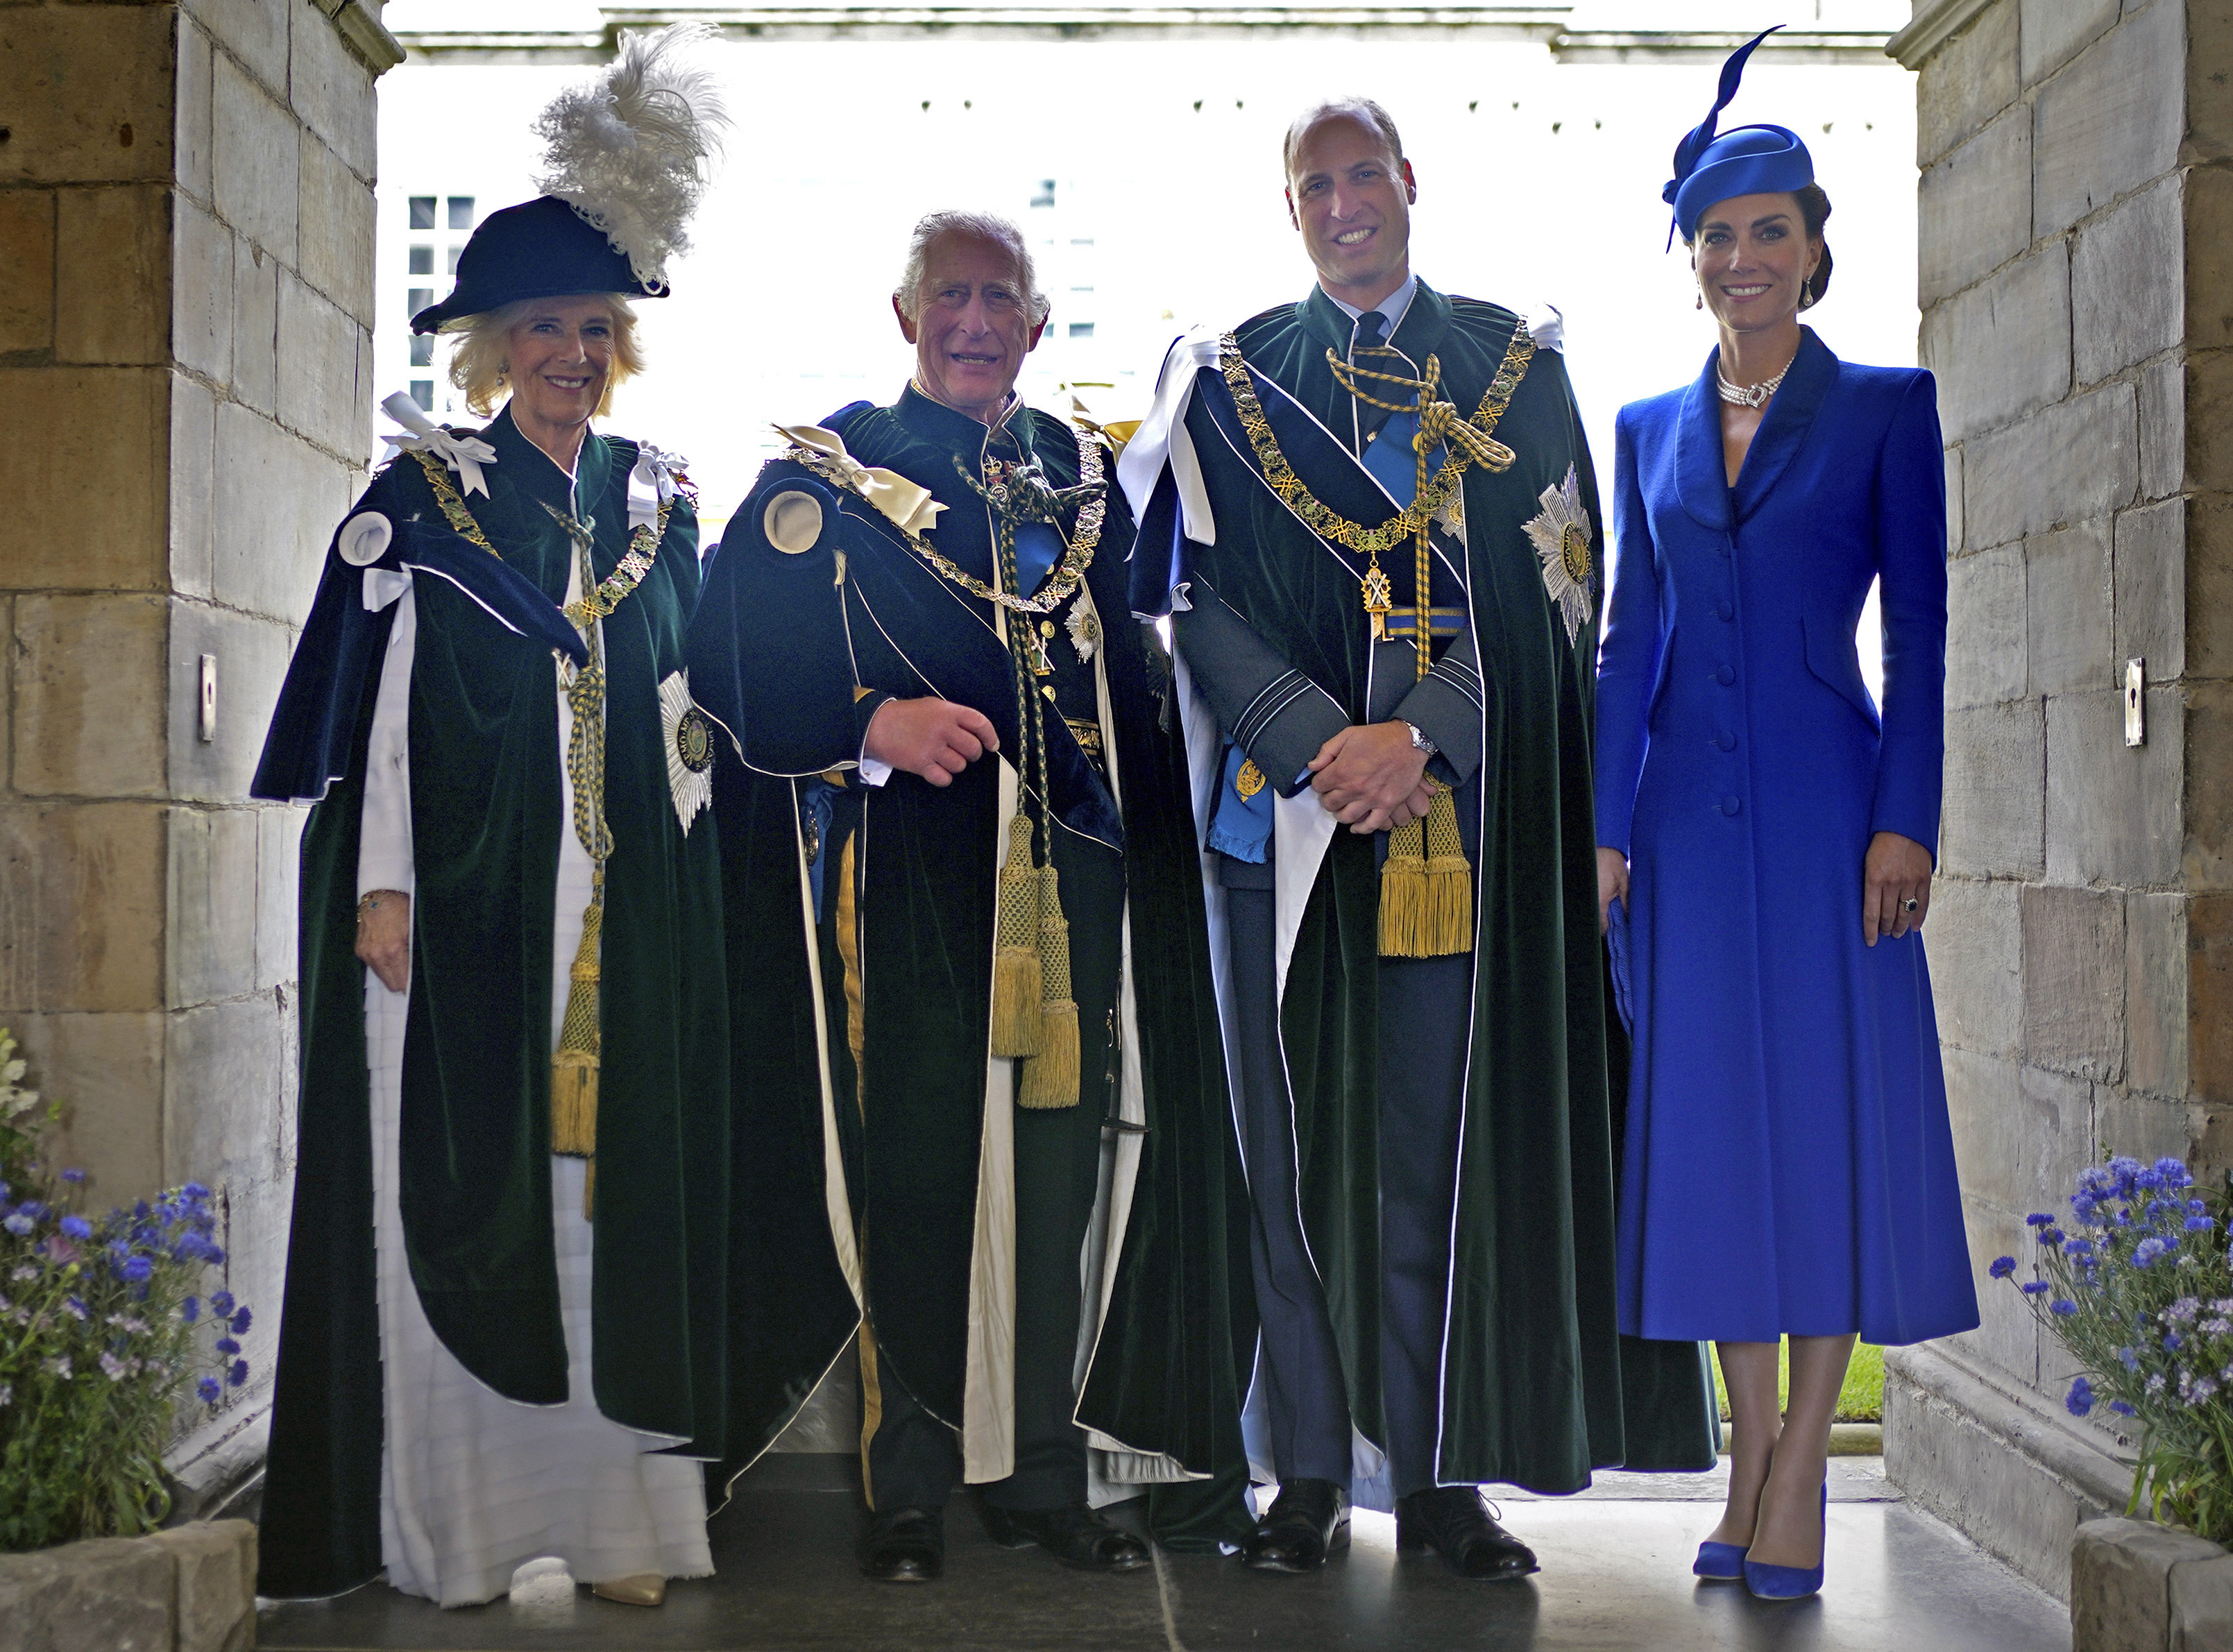 König Charles, Camilla und William in ihren grünen Distelmänteln mit Kate in Blau